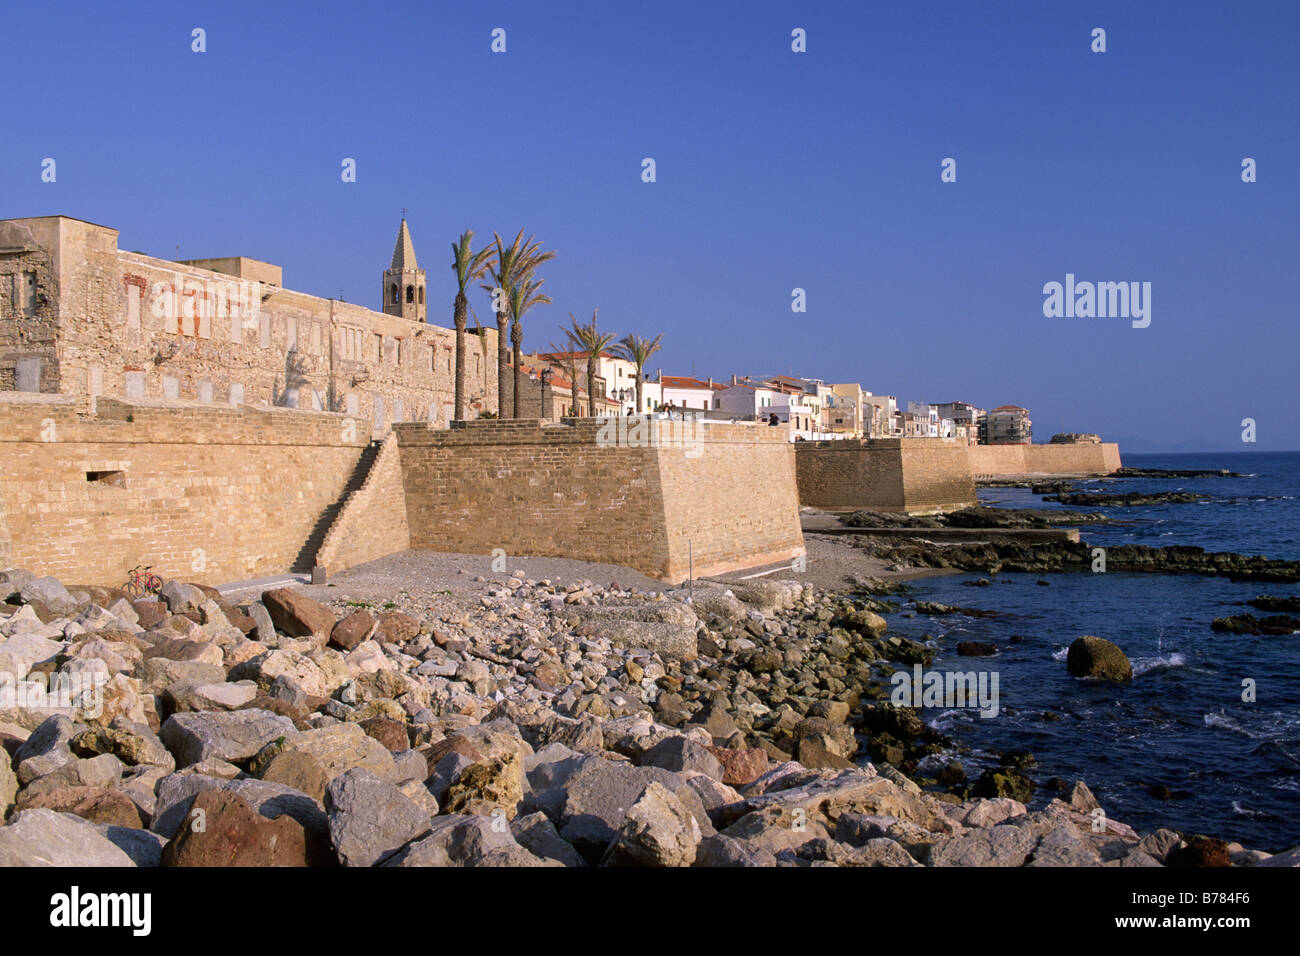 Italy, Sardinia, Alghero, city walls Stock Photo